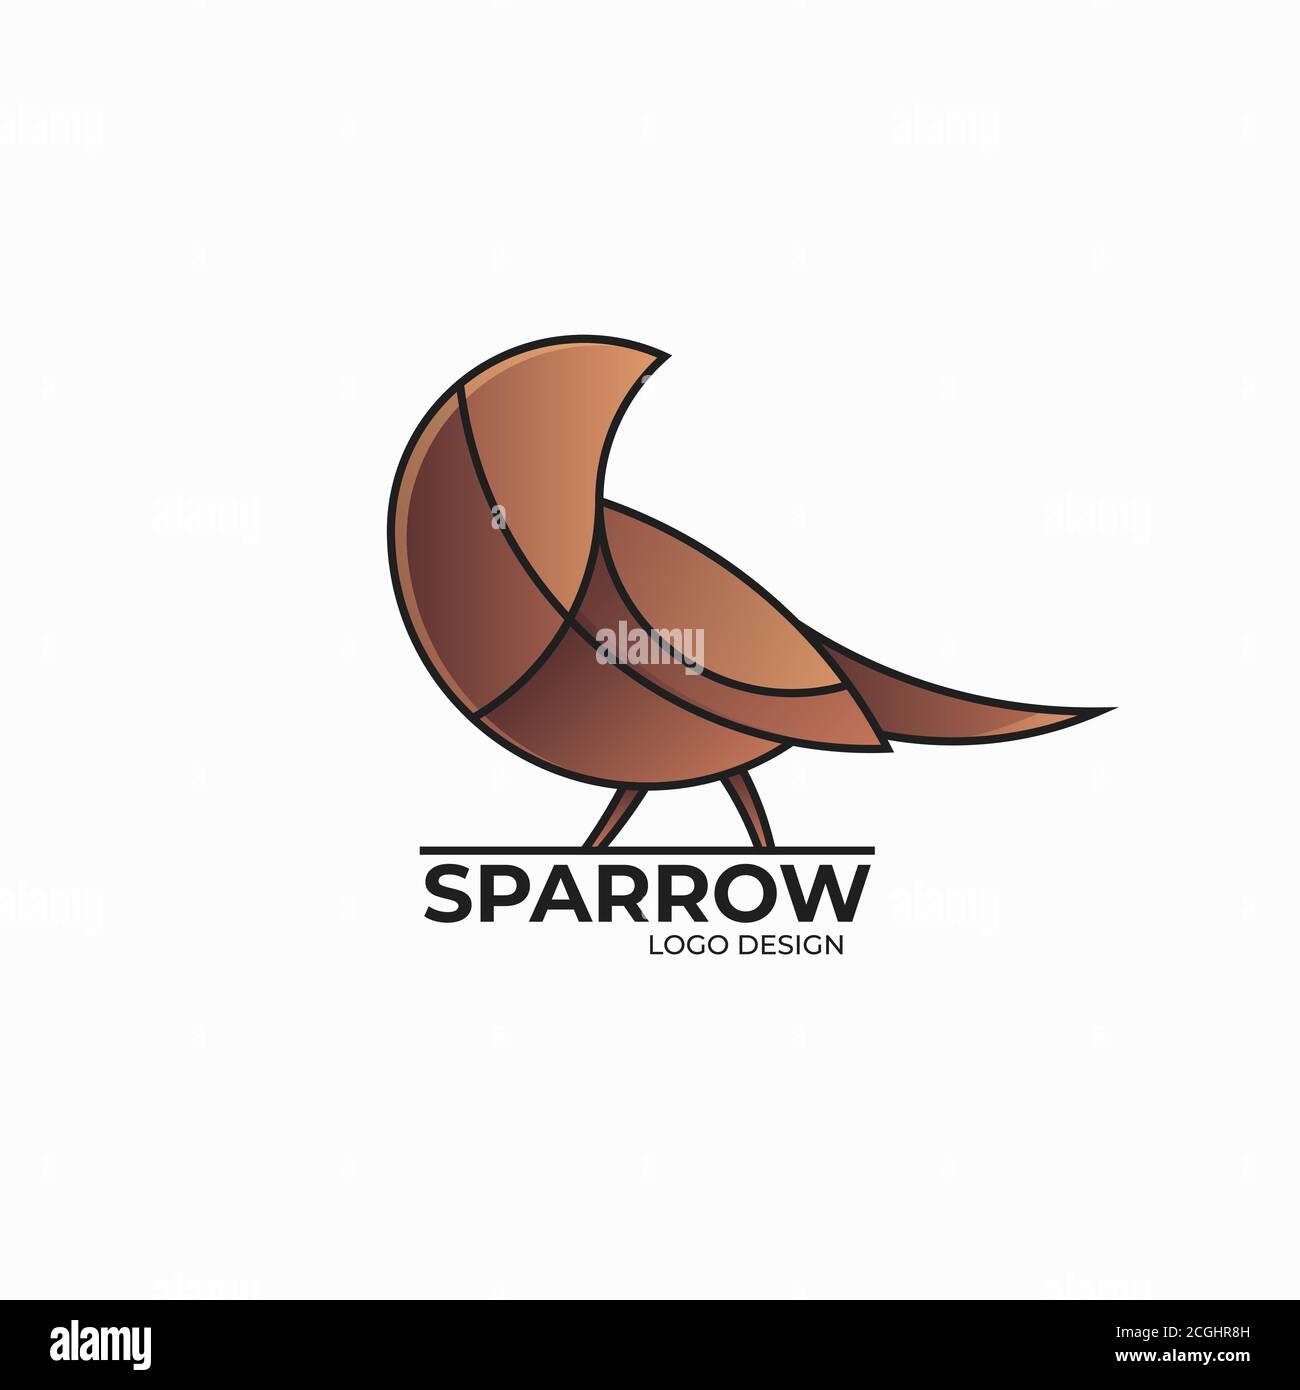 Sparrow logo design template Stock Vector